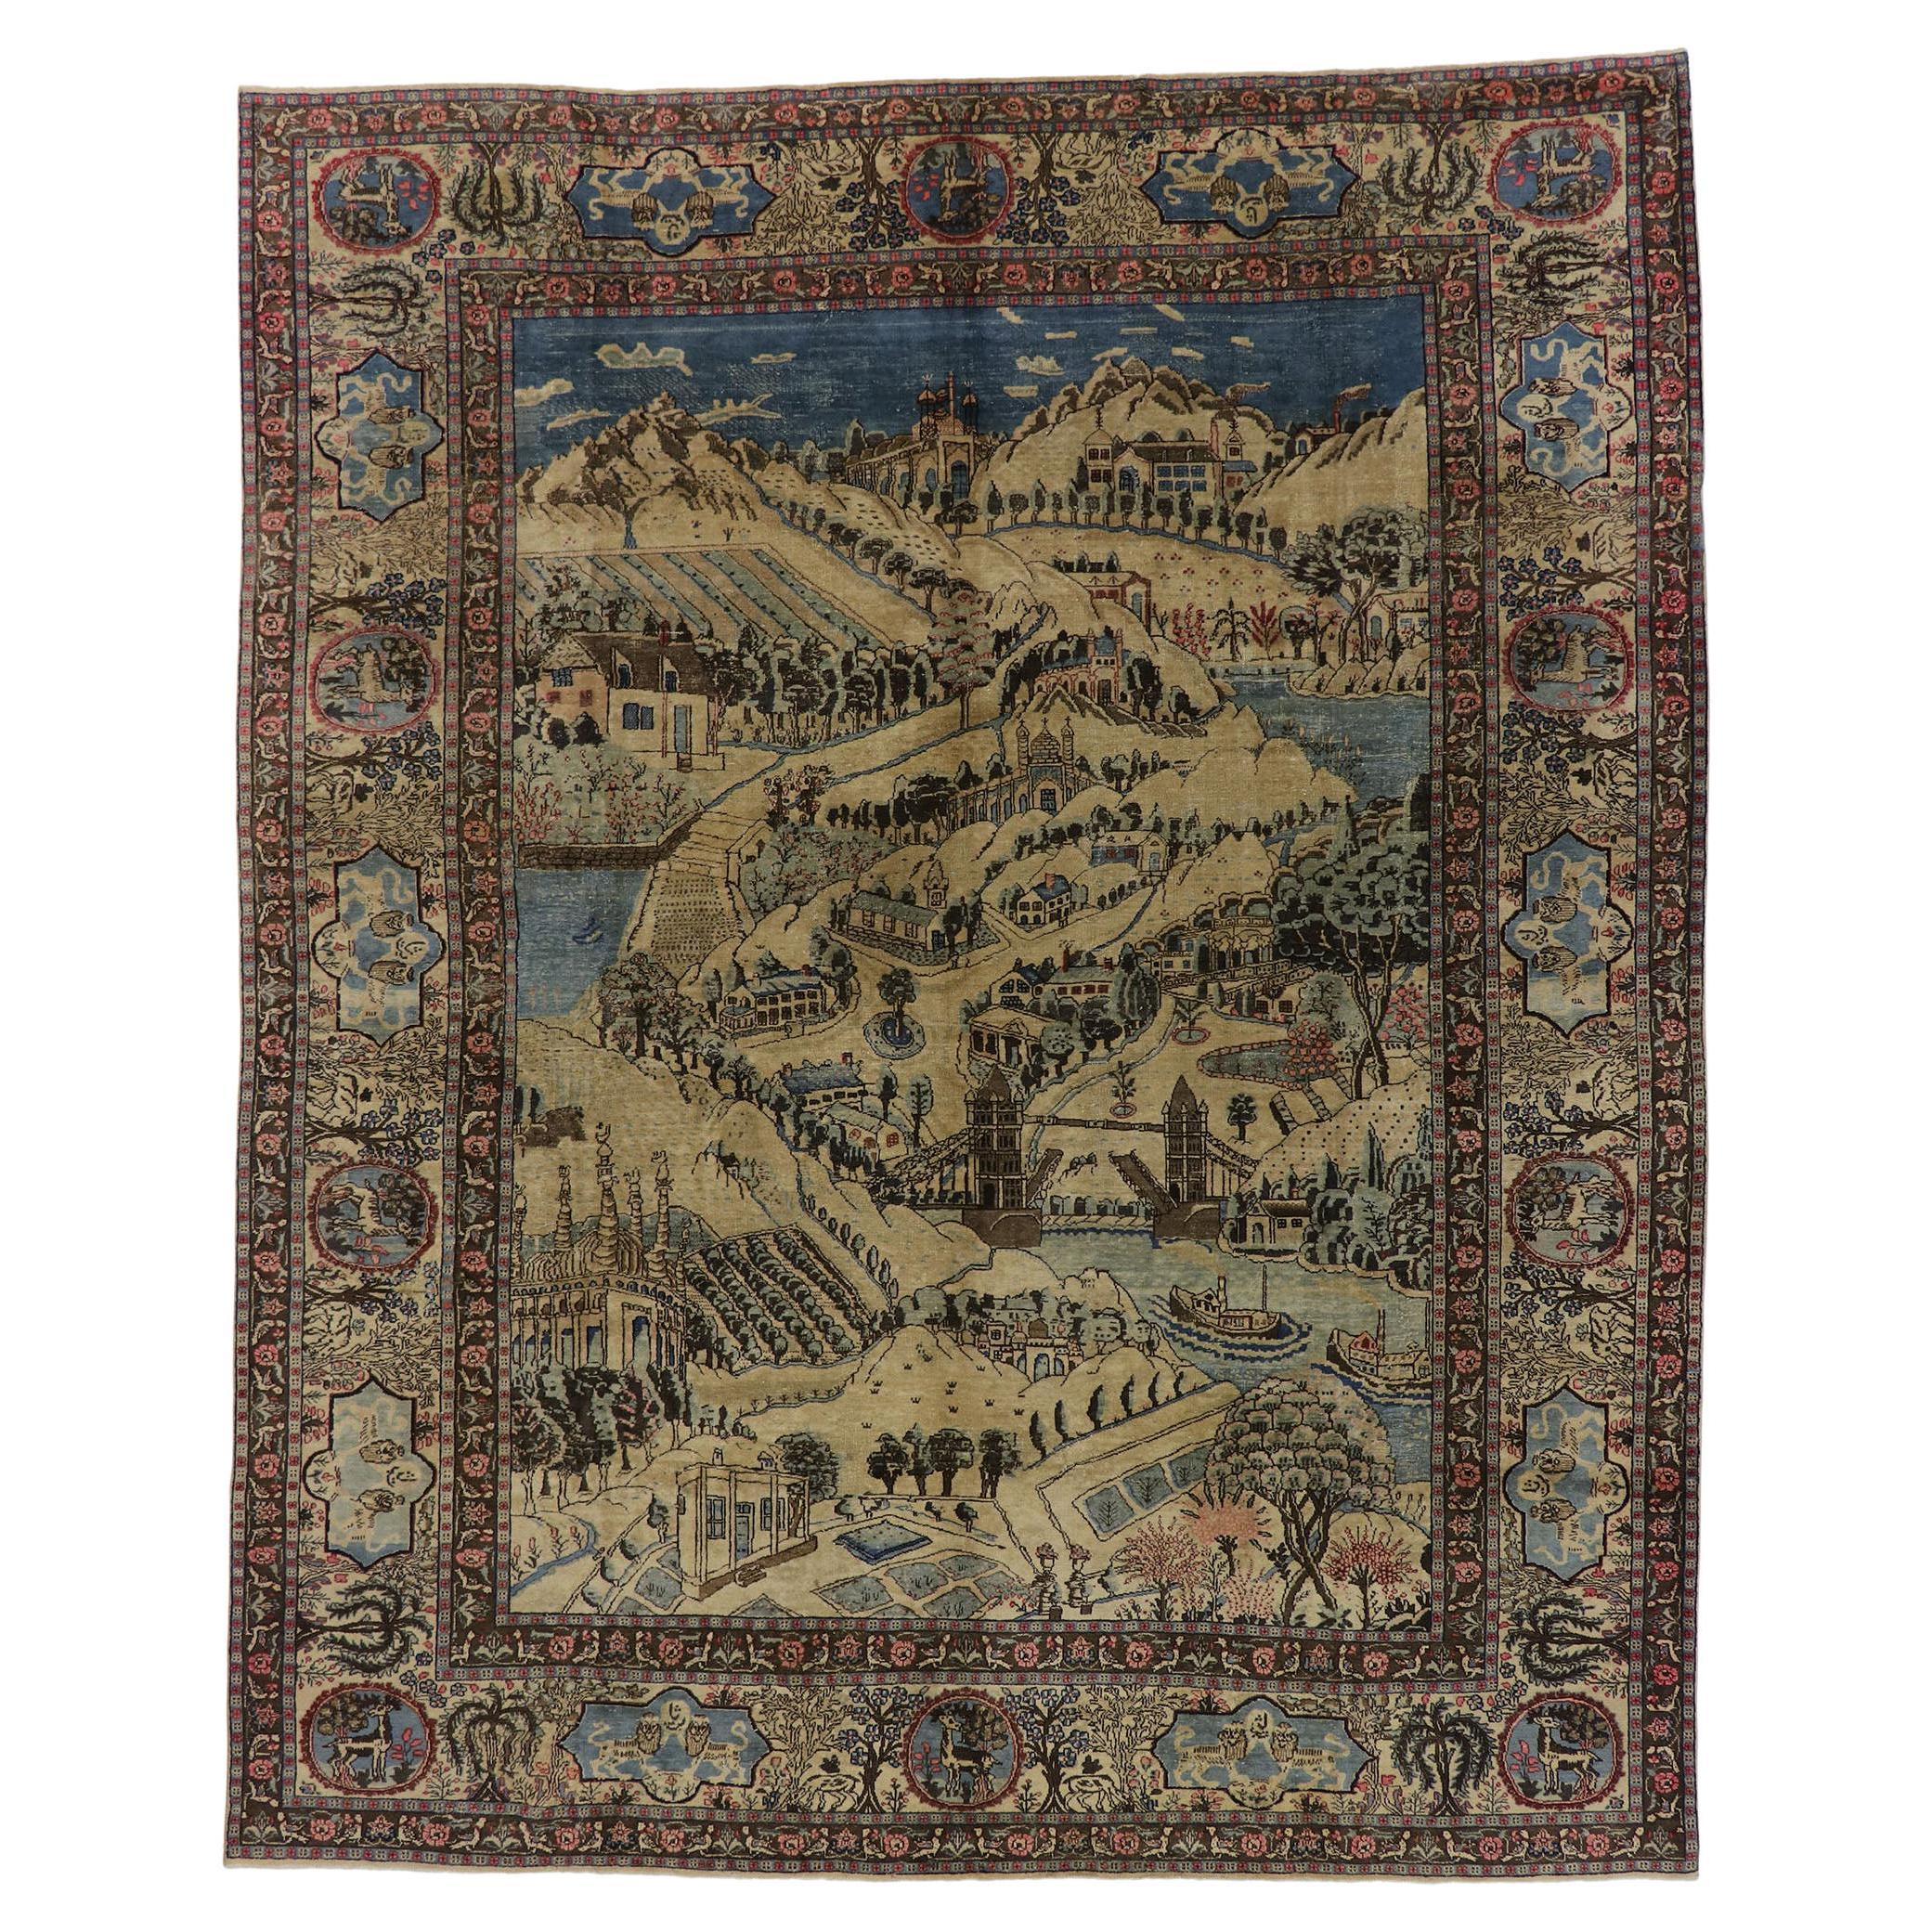 Gealterter antiker persischer Täbriz Bildteppich mit Kartuschenbordüre